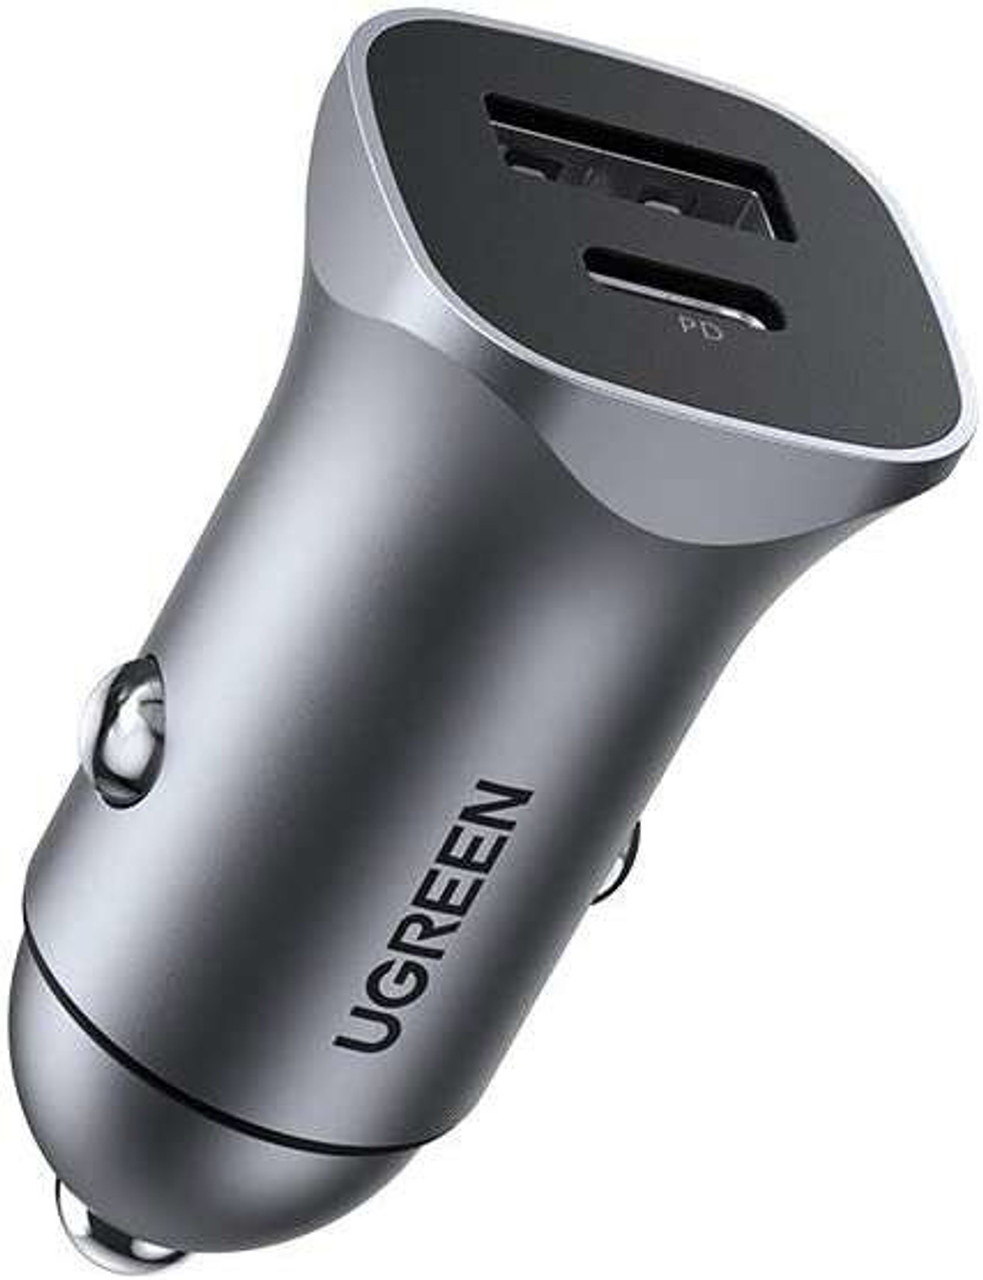 Chargeur de voiture rapide prix en fcfa - Ugreen - 24 W - Double USB -  Adaptateur de Prise de voiture